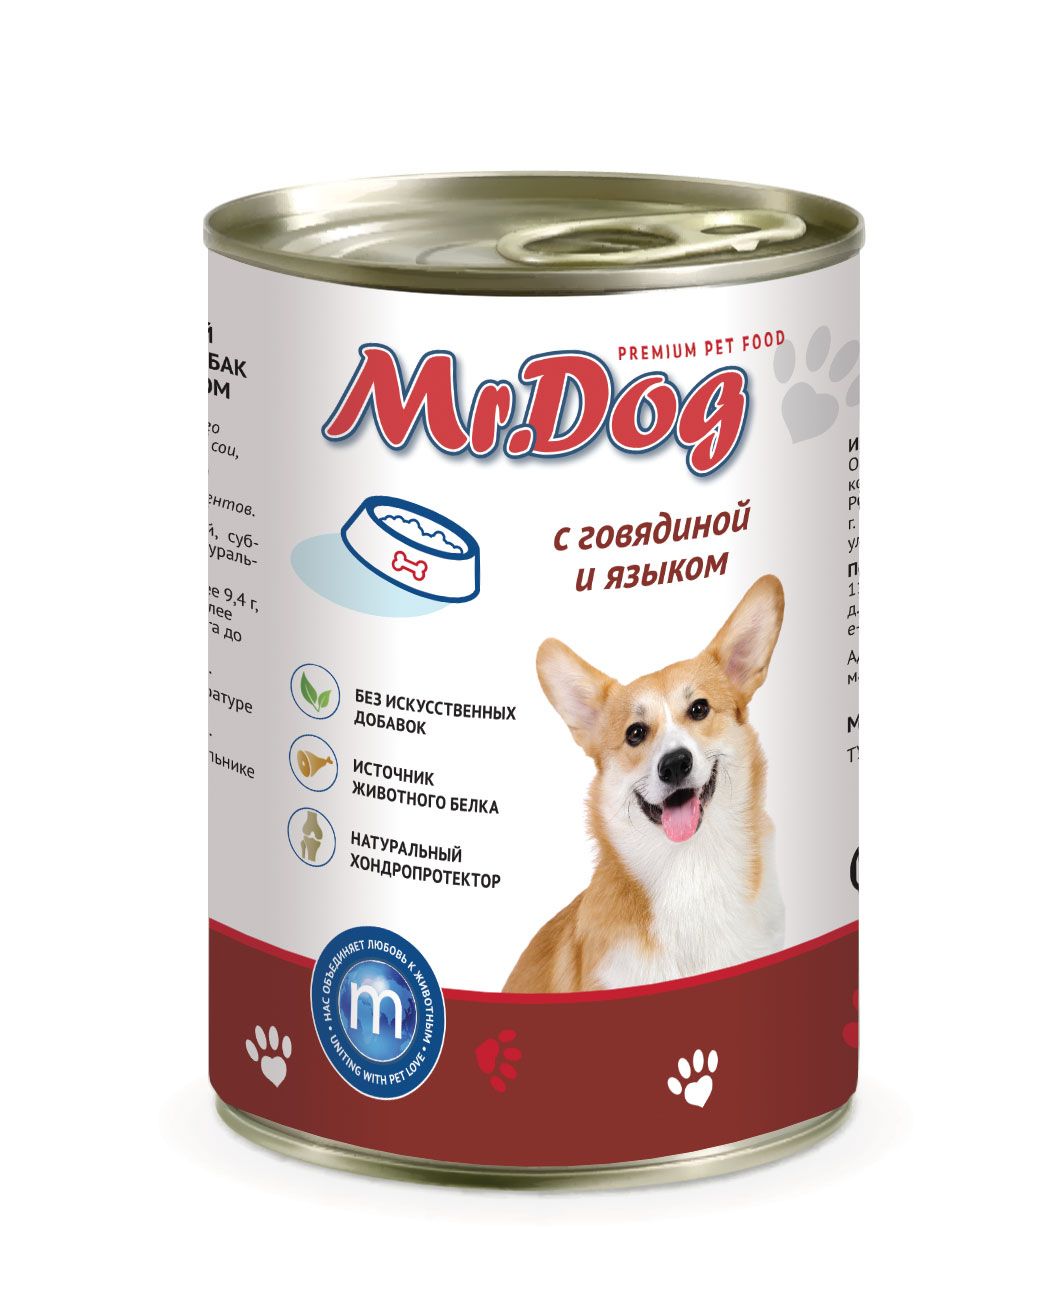 Mr.Dog Говядина/Язык консервы для собак 410 гр 1